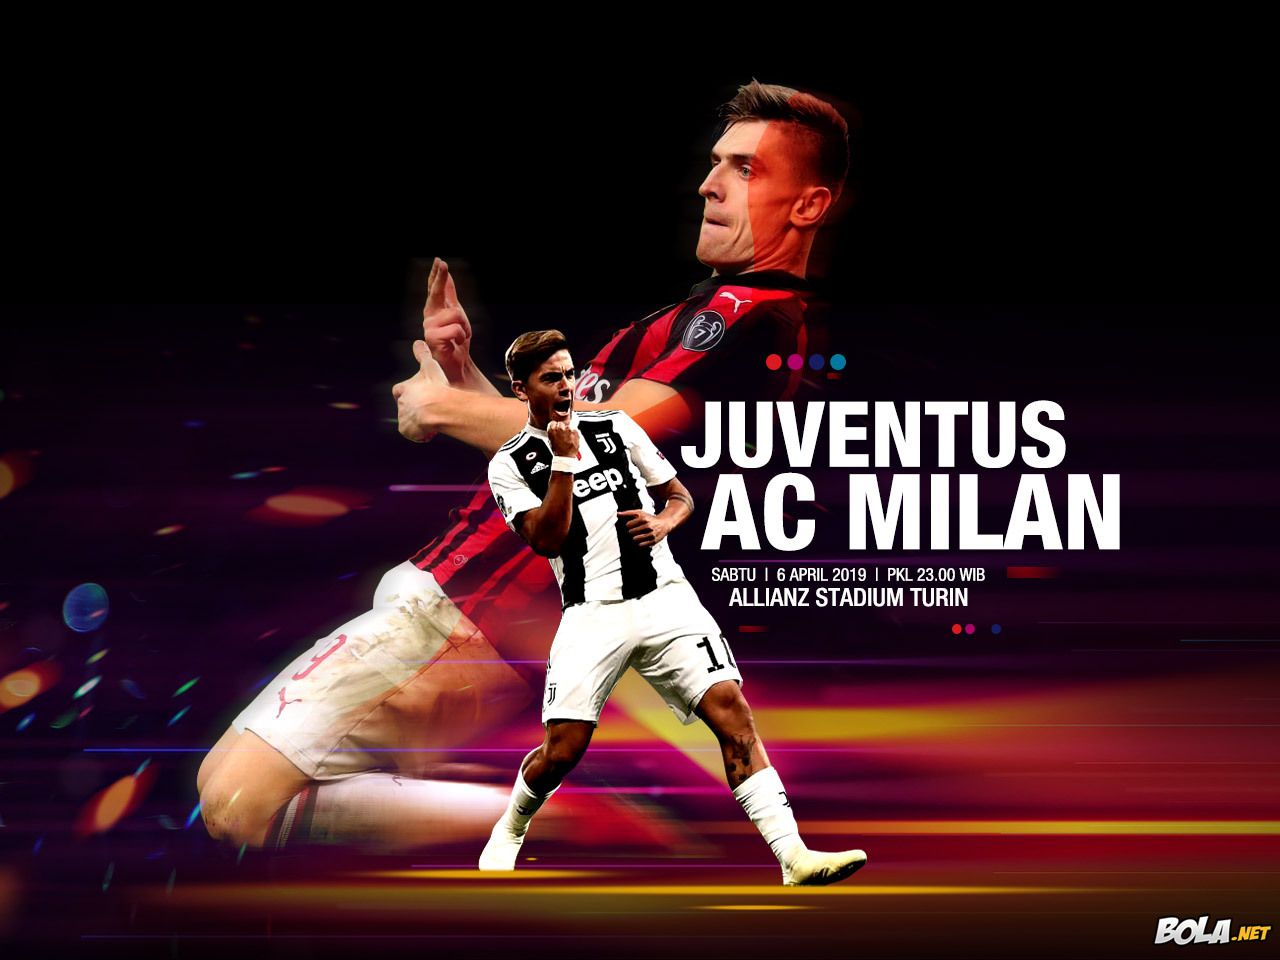 Deskripsi : Wallpaper Juventus Vs Ac Milan, size: 1280x960